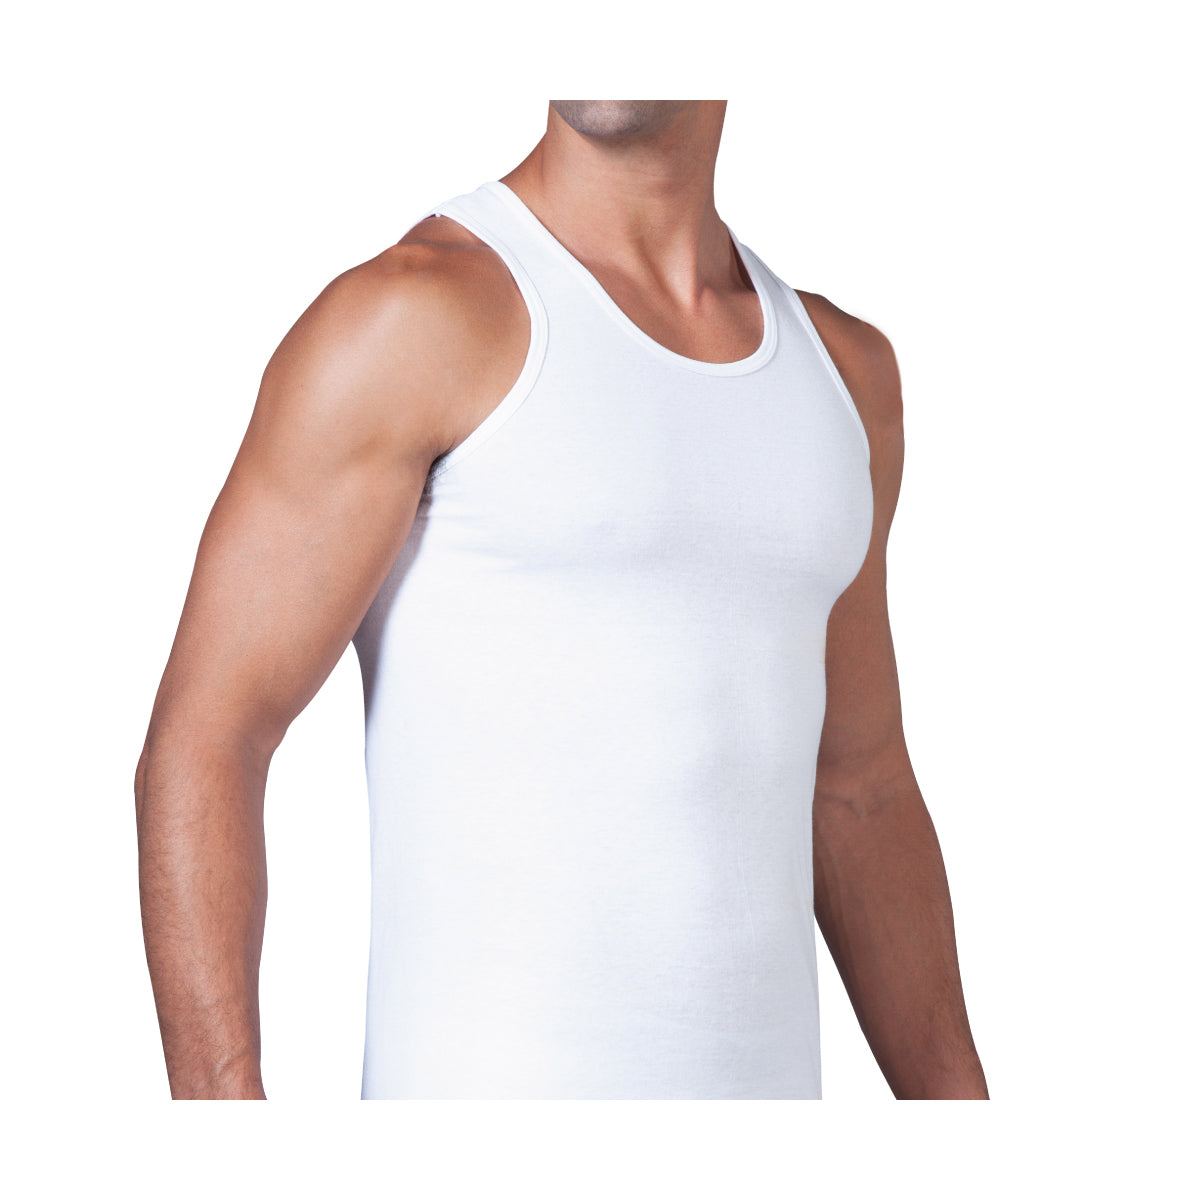 Camiseta Blanca 3 Pack 100% algodon zaga